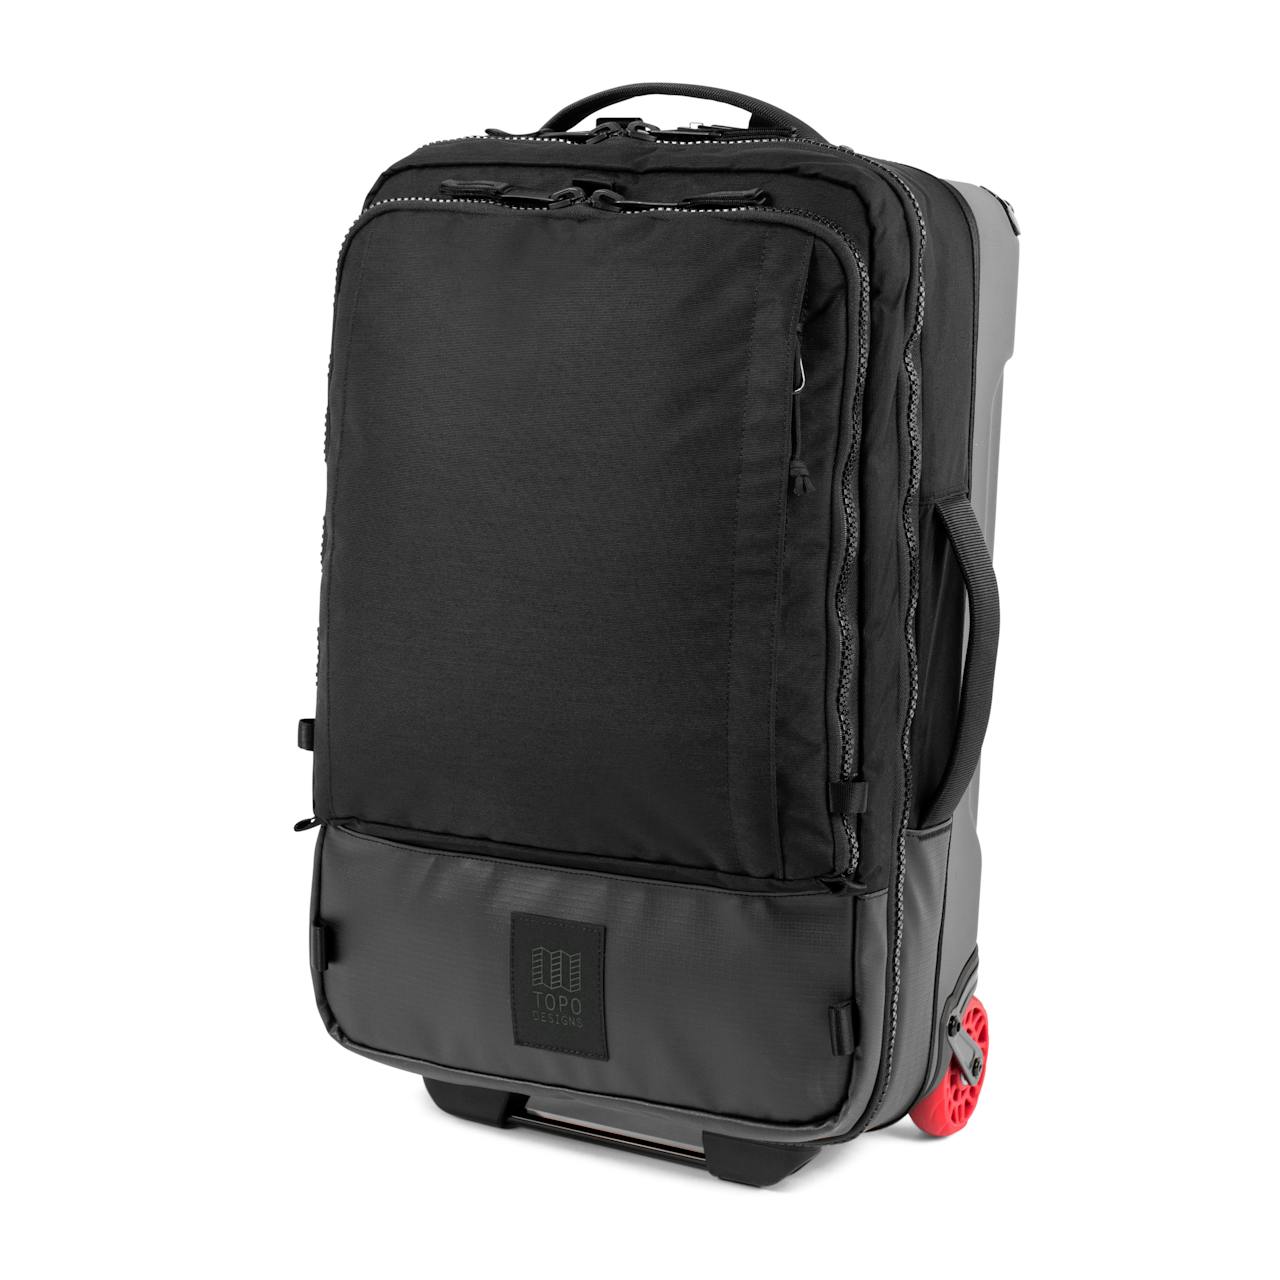 Topo Designs Travel Bag Roller - 44L